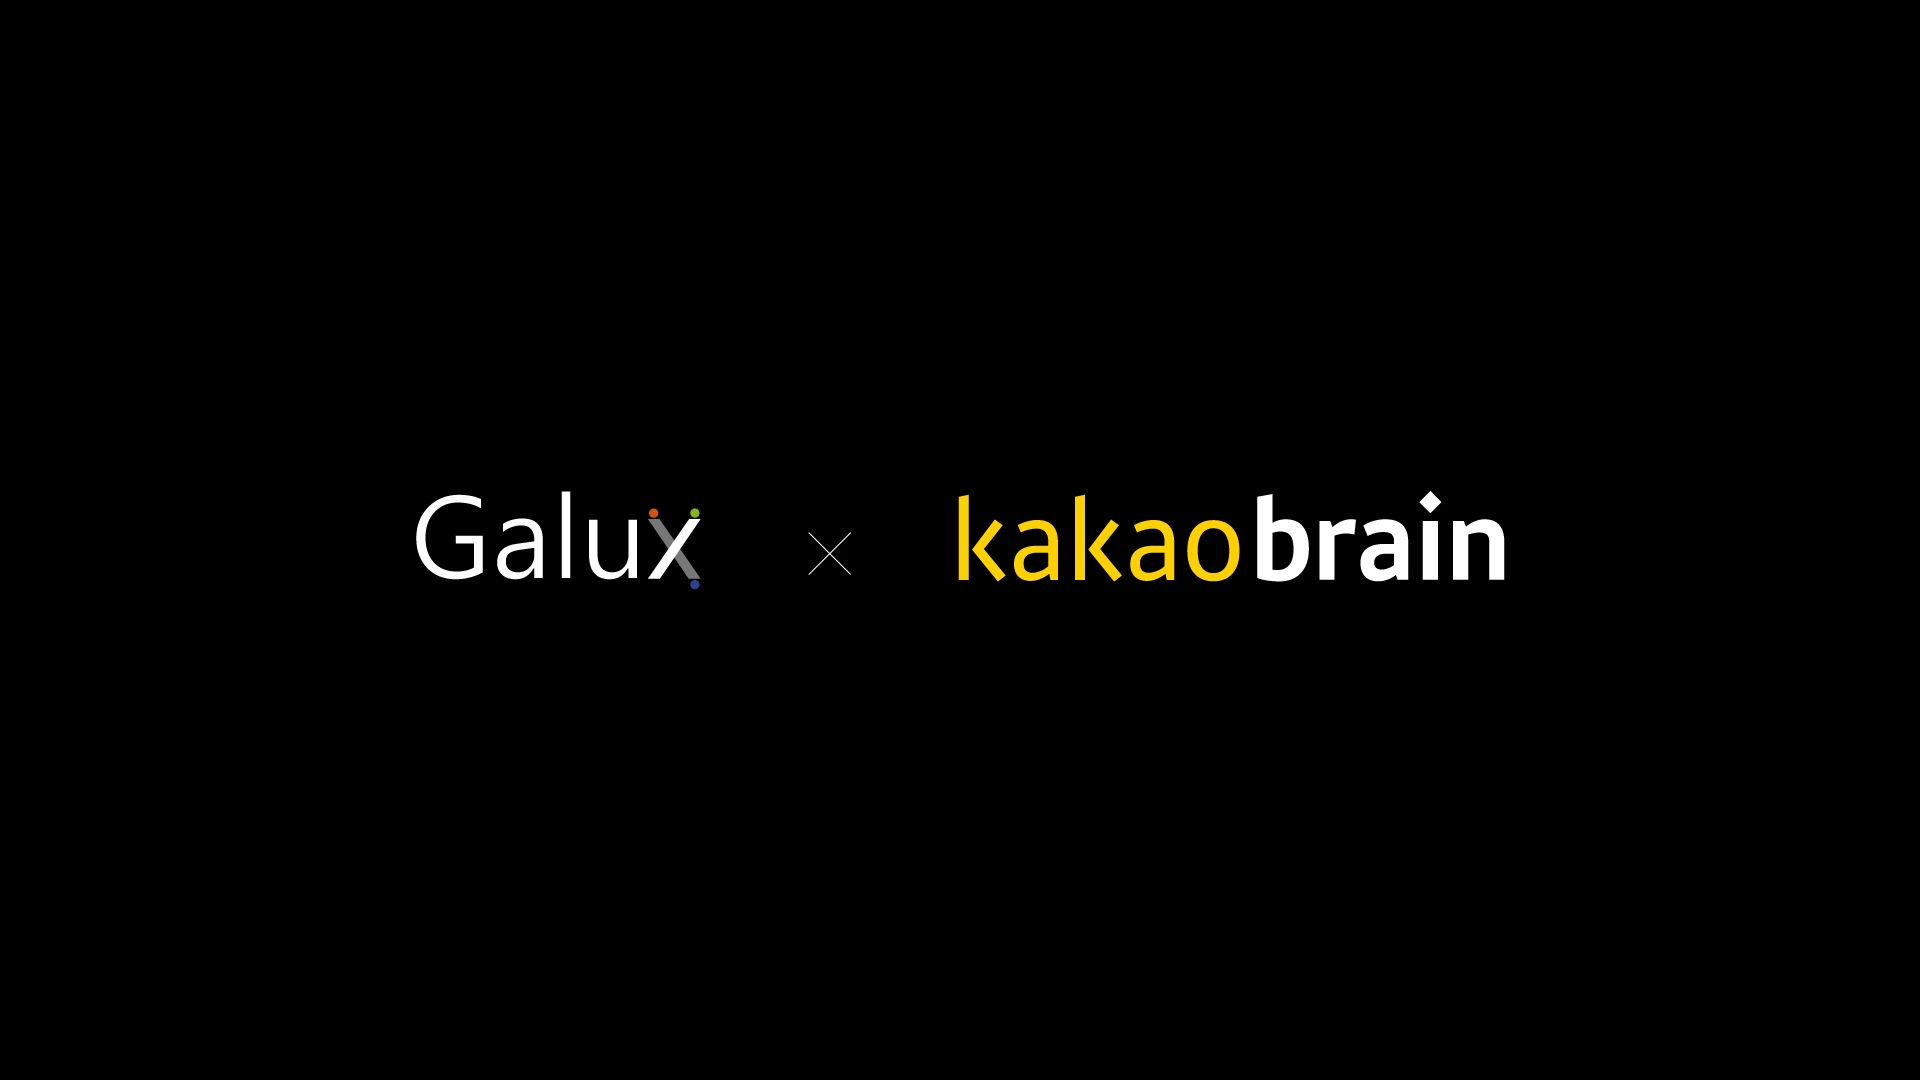 카카오브레인의 기업 로고와 갤럭스의 기업 로고가 나란히 위치하고 있다.